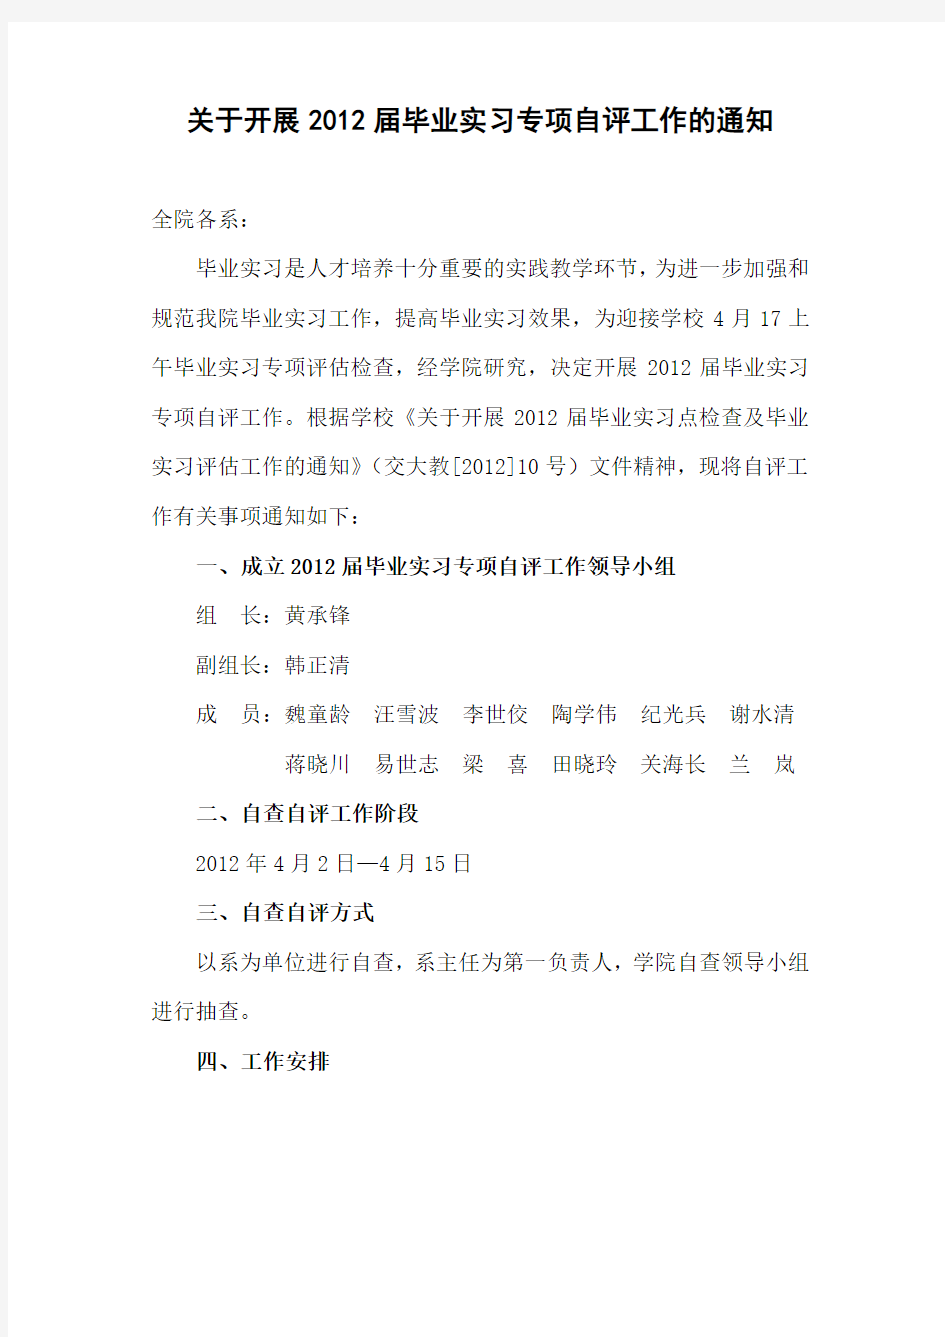 《重庆交通大学毕业实习报告》格式